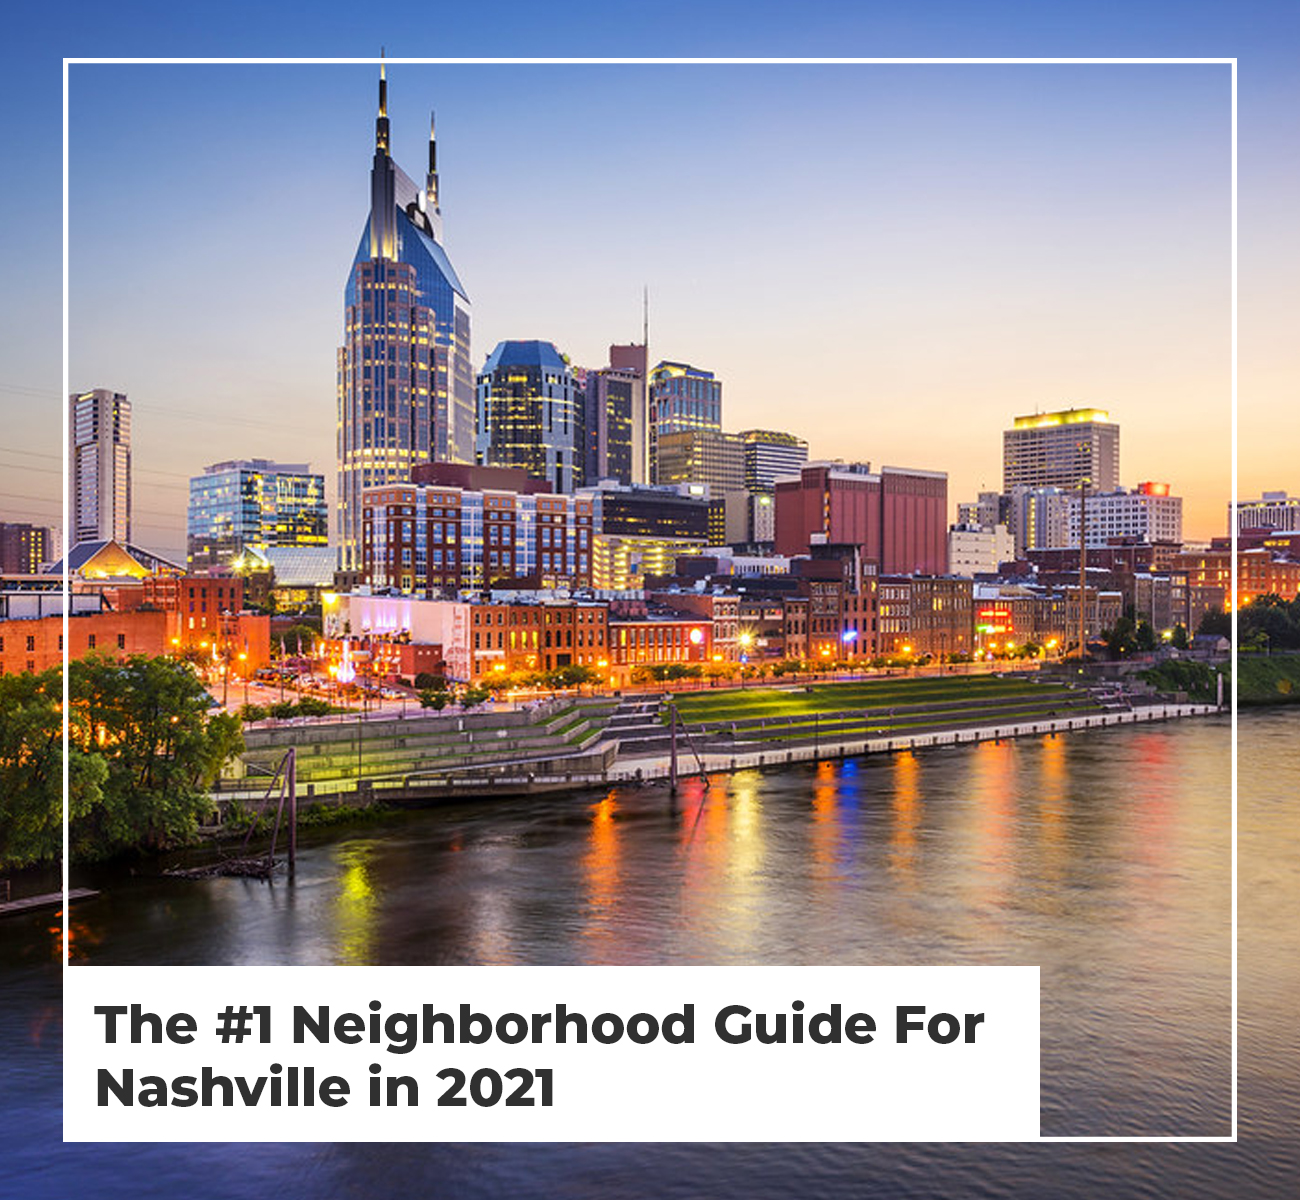 Best Neighborhoods in Nashville